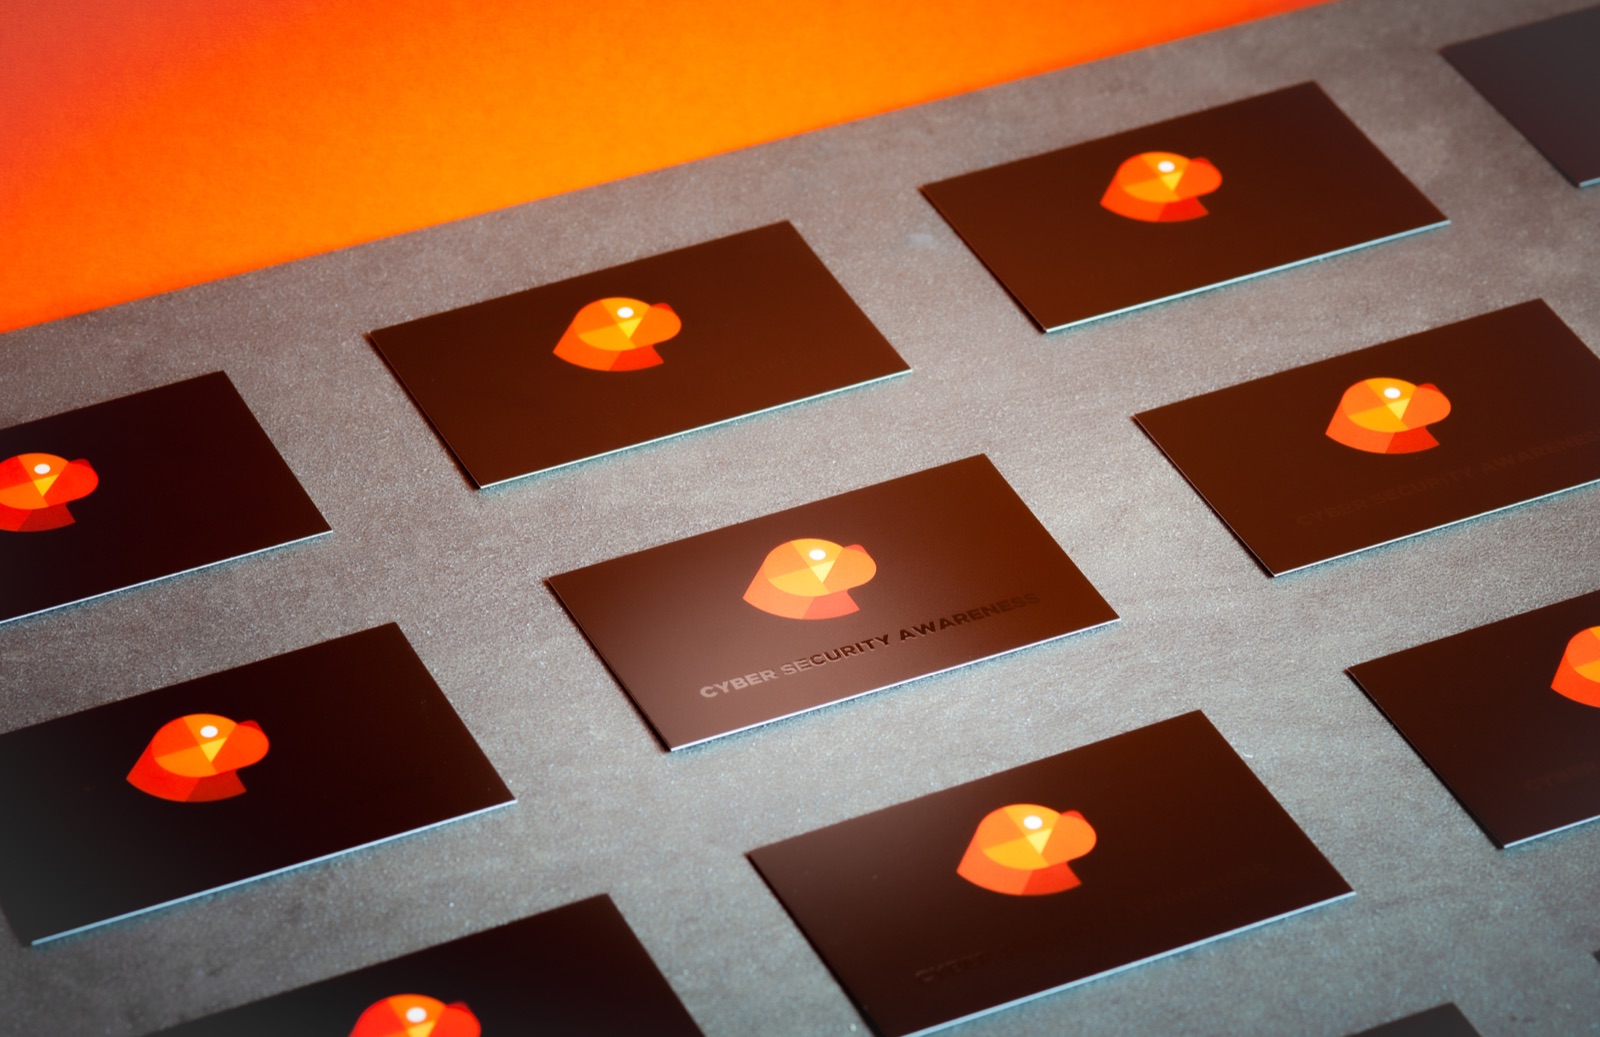 Printing Spot UV Varnished Premium Business Cards for SecureAZ
